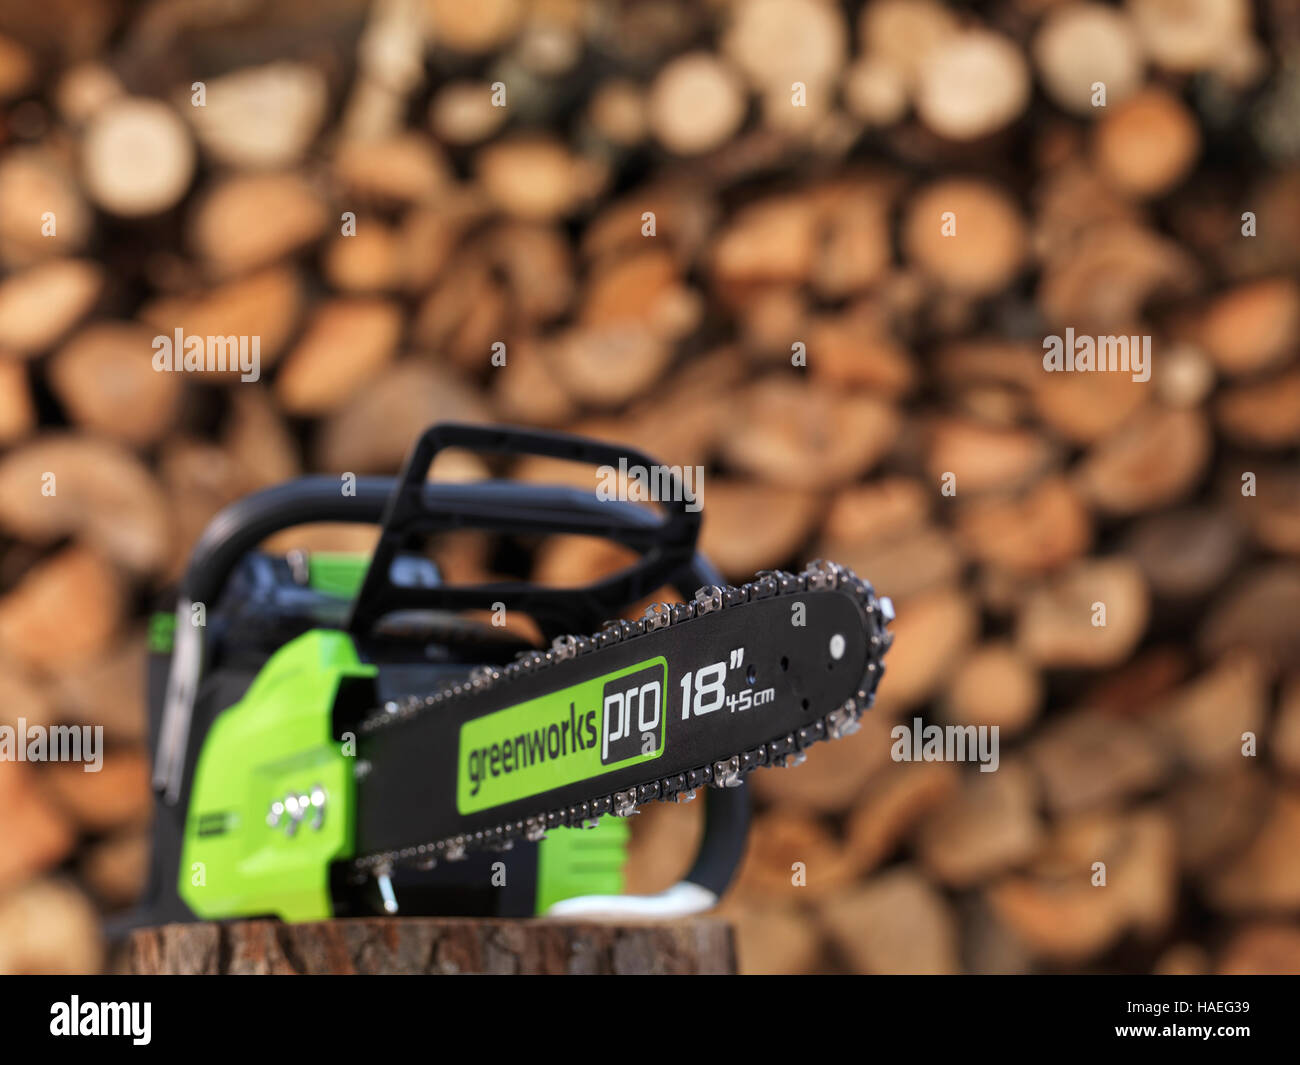 Elektrische Akku Batterie betriebene Kettensäge Greenworks vor einem gestapelten Haufen Brennholz im Hintergrund Stockfoto